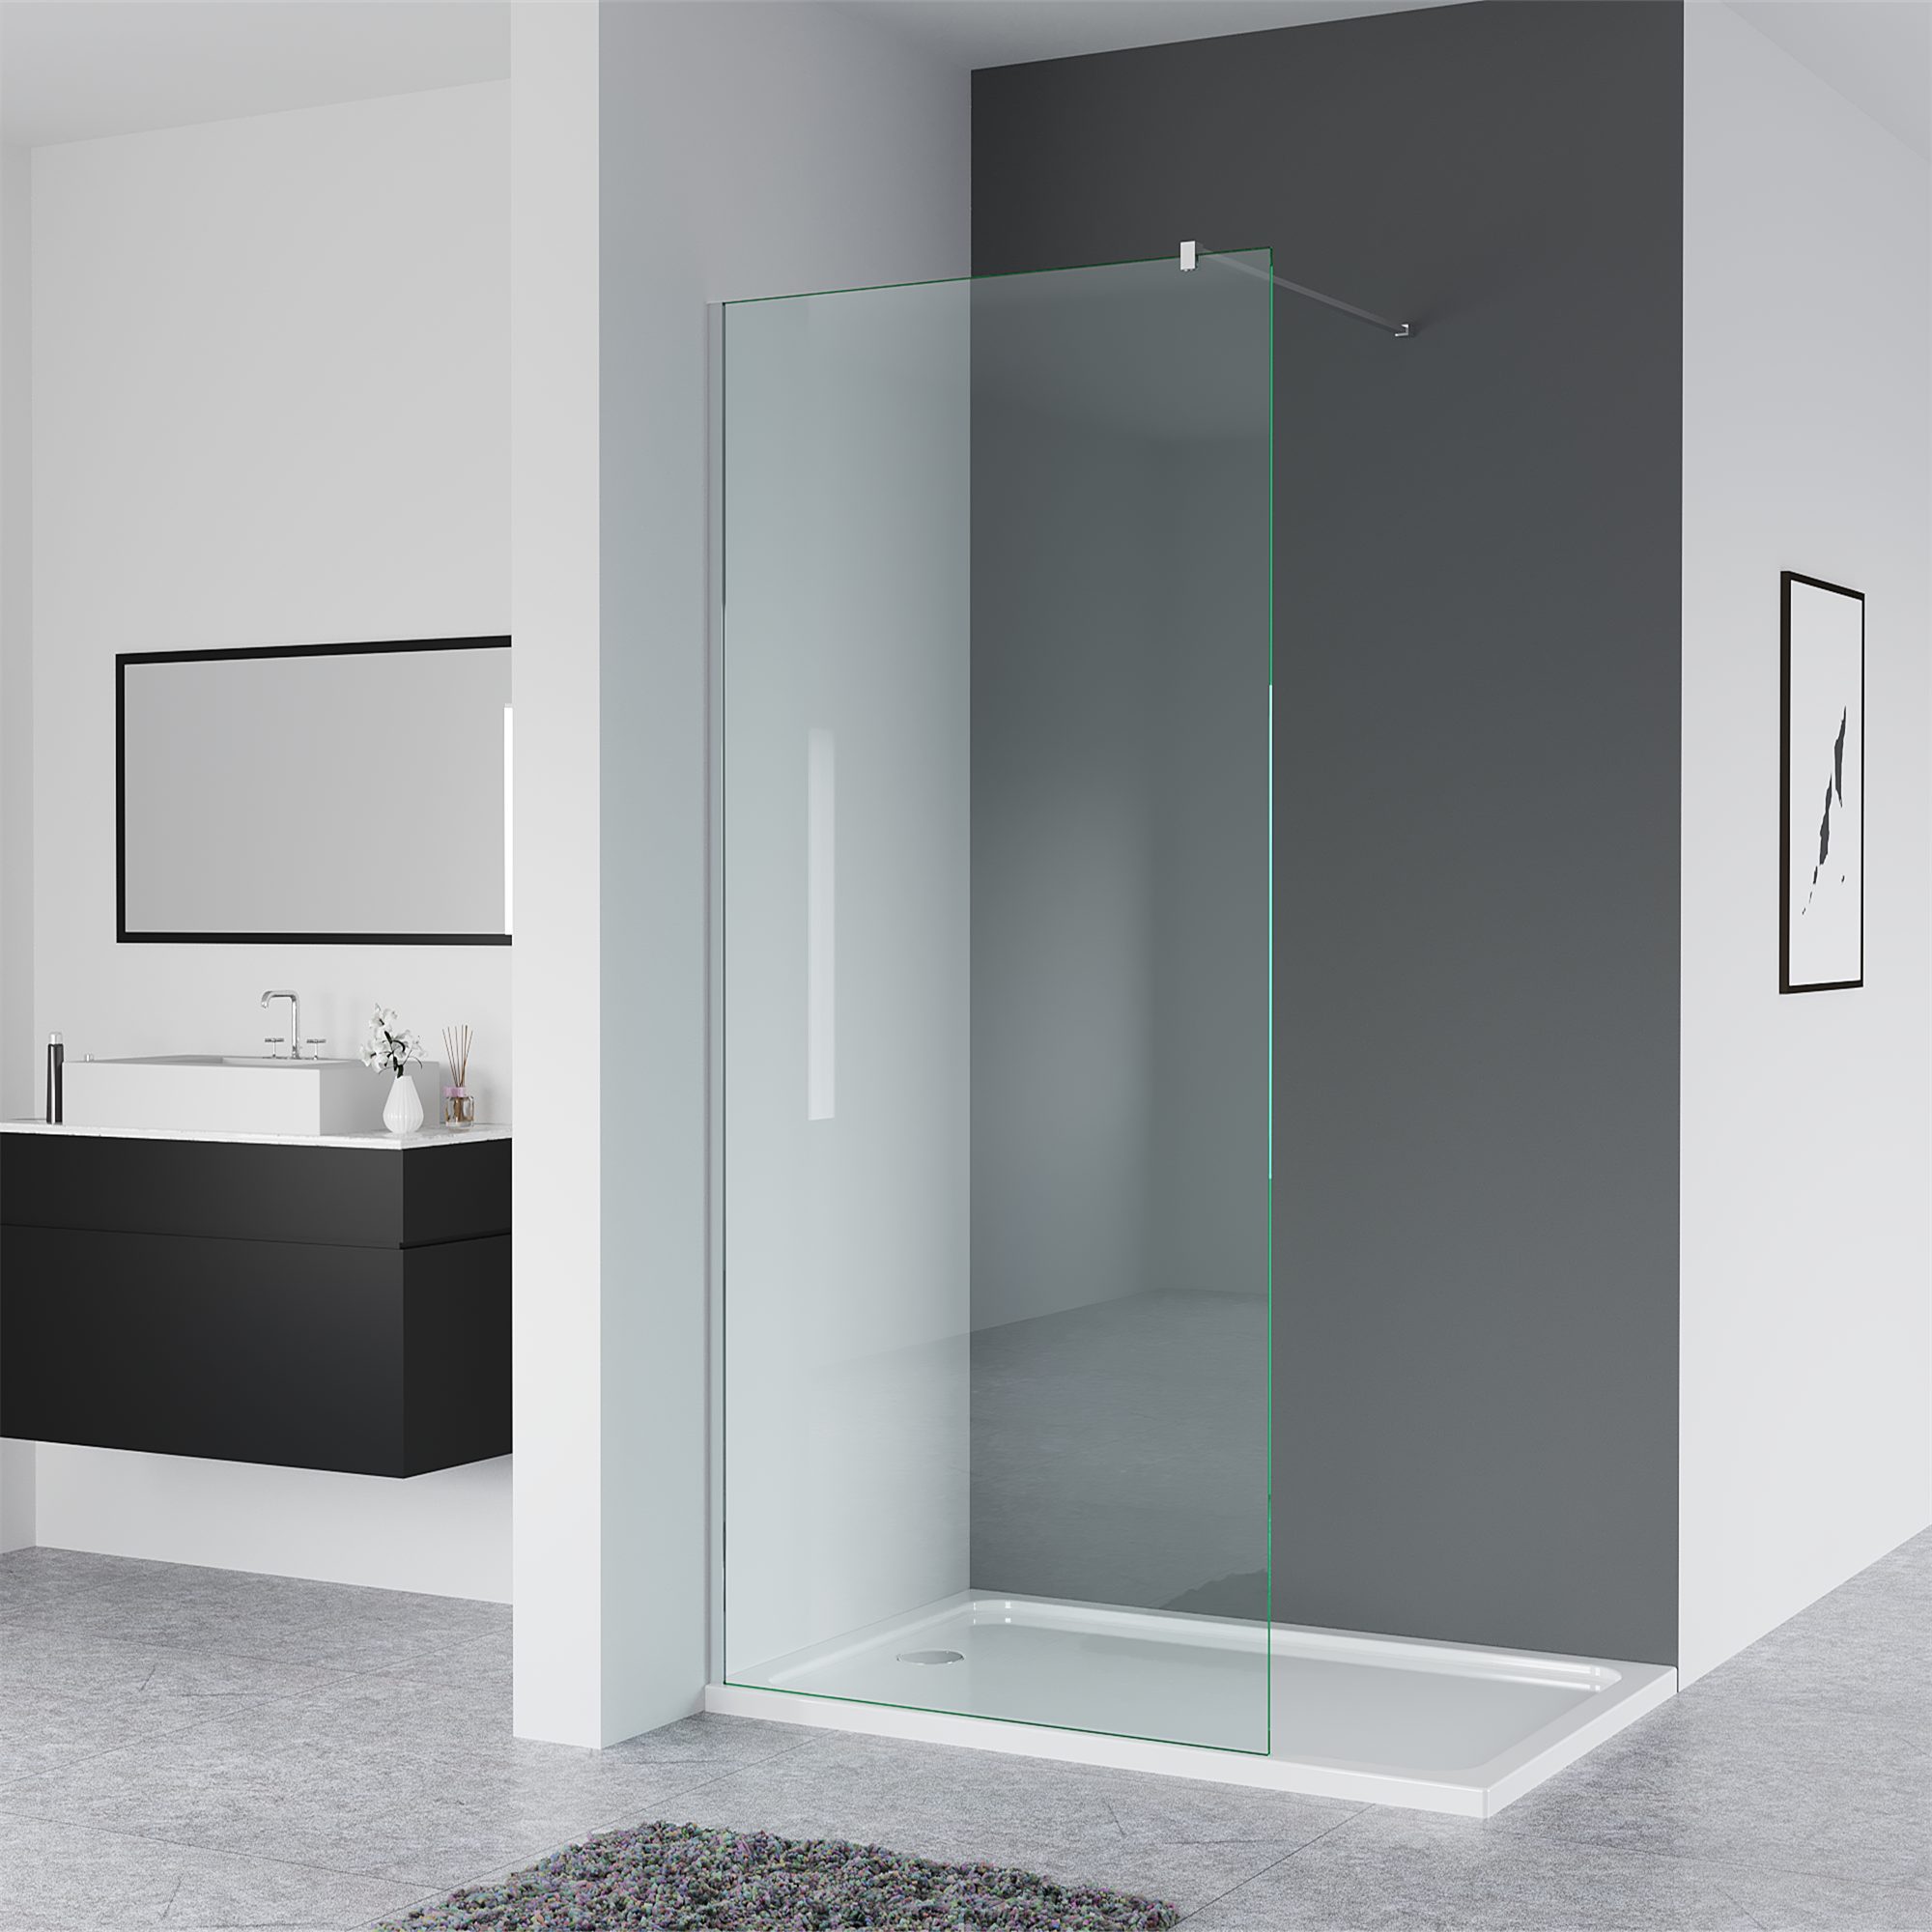 IMPTS Duschwand »Glaswand Dusche«, Glas, (80-120 x 200cm, Begehbare  Duschabtrennung,8mm ebenerdig Glastrennwand), mit Nano Clean Beschichtung  online kaufen | OTTO